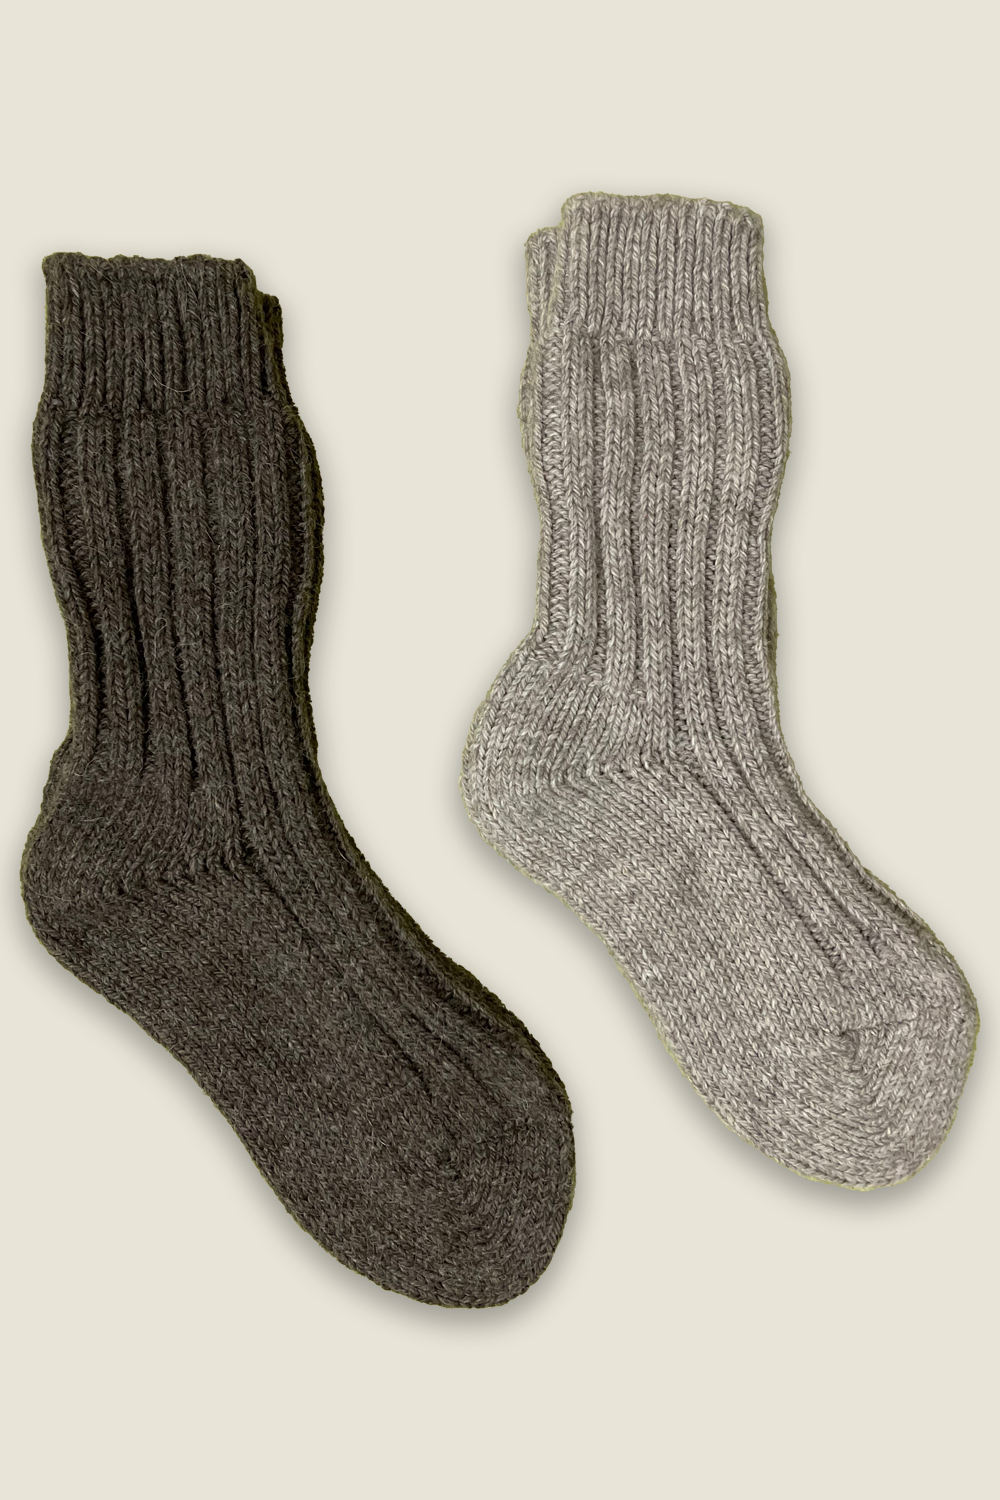 Calcetines de alpaca - gris y marrón - 2 pares